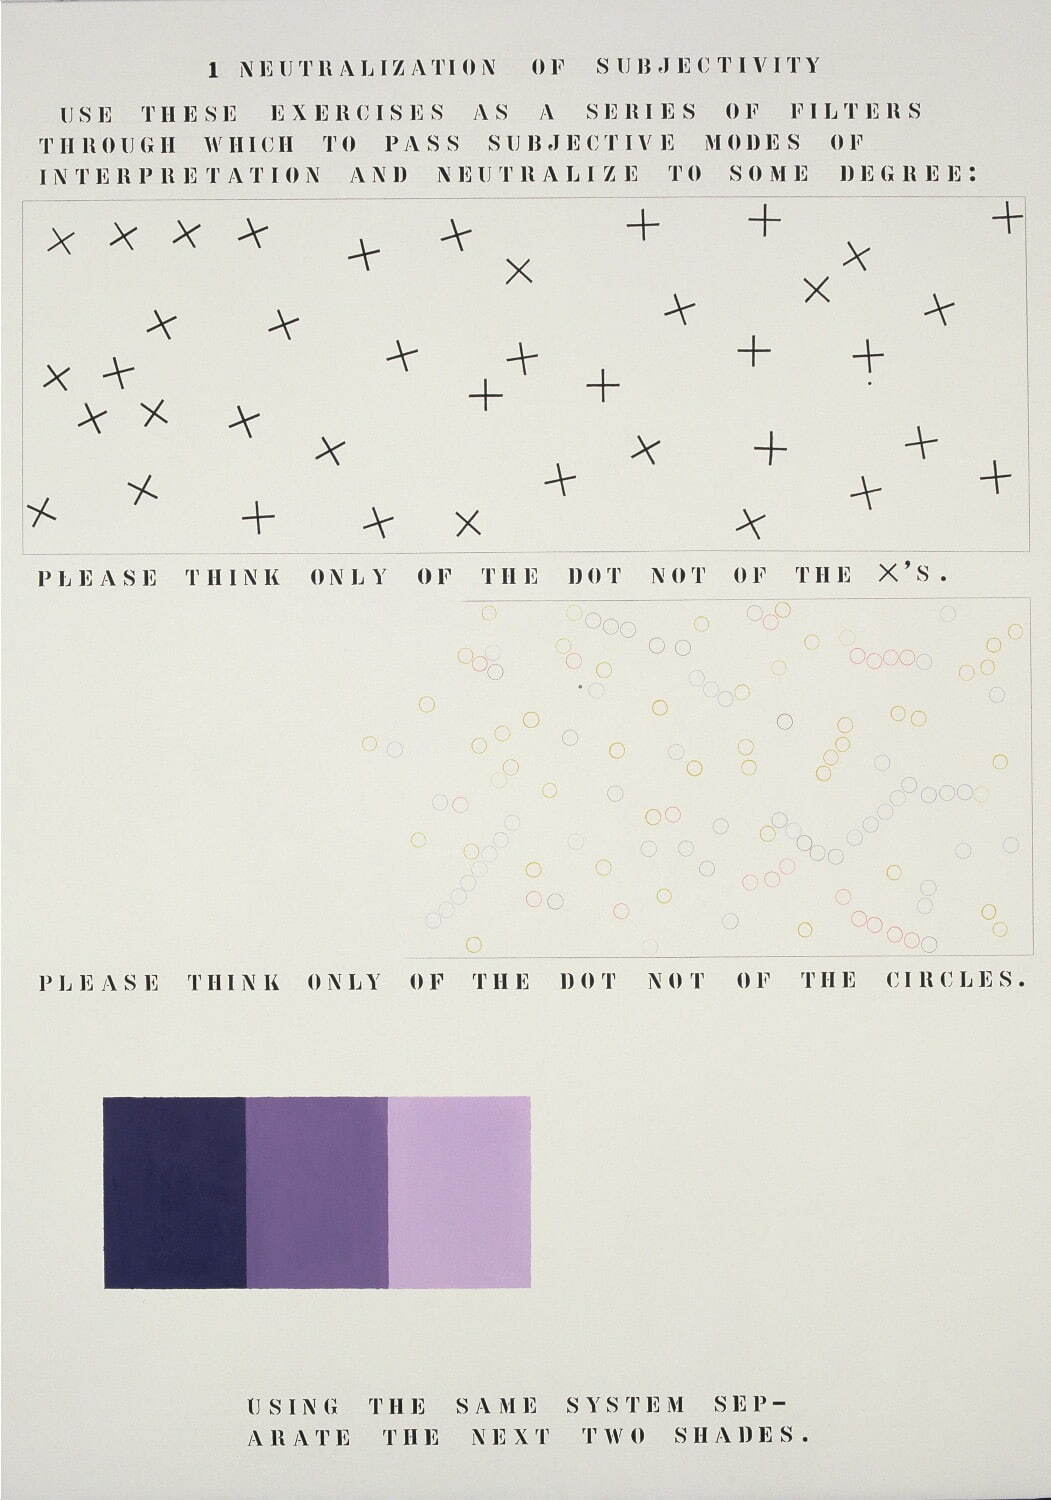 荒川修作＋マドリン・ギンズ 《意味のメカニズム》「主観性の中性化」
1963年頃-1988年 油彩他、画布 244×173cm